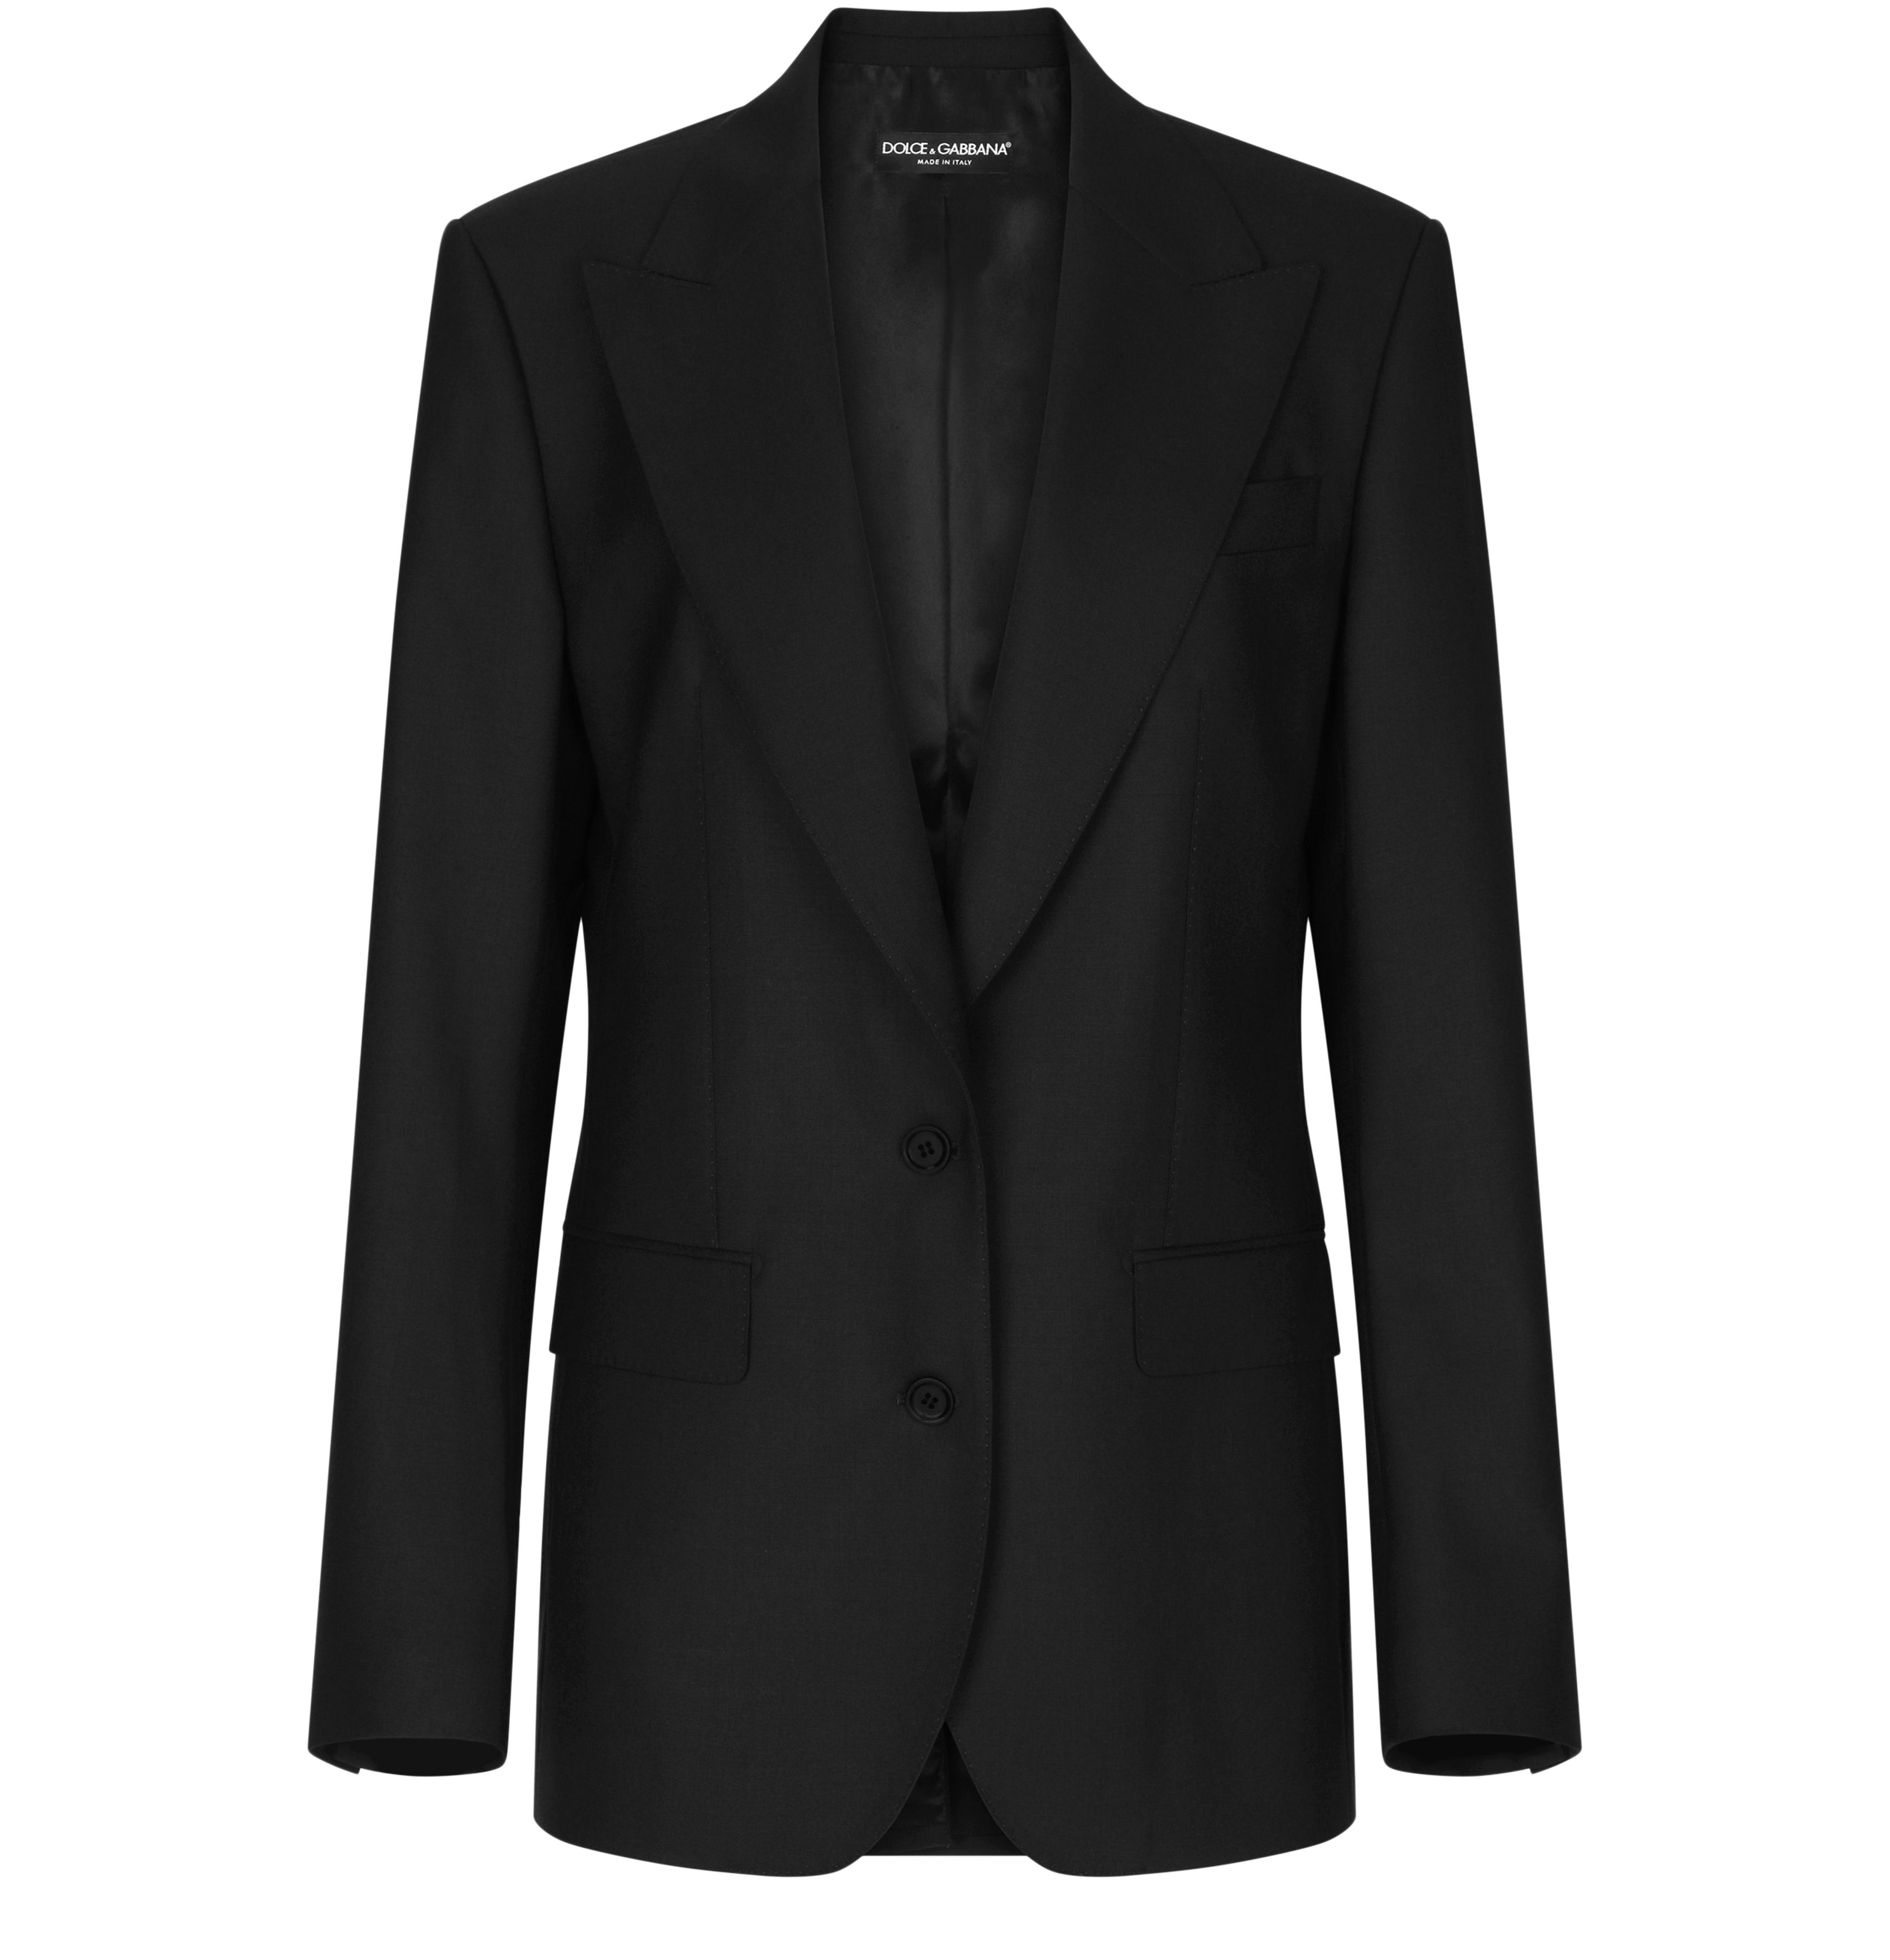 Dolce & Gabbana Single-breasted woolen jacket